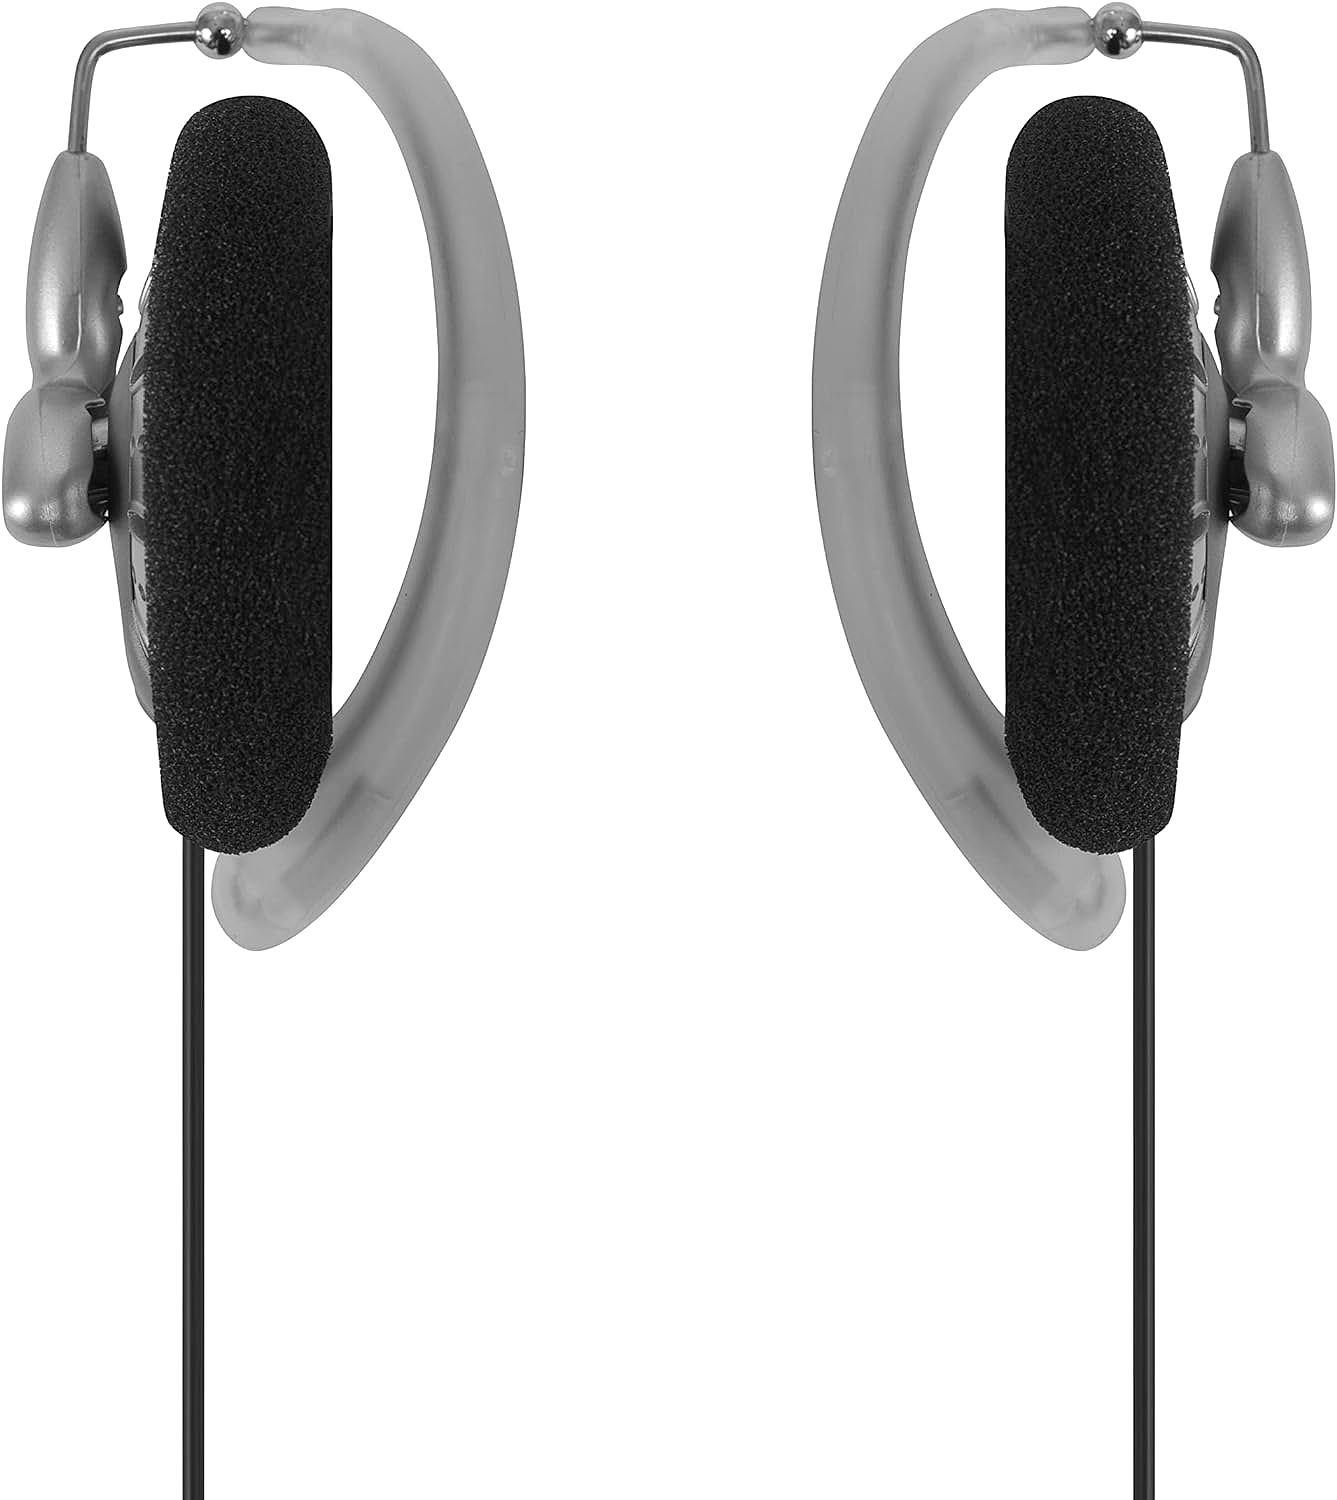  Koss KSC75 Portable Stereophone Headphones 